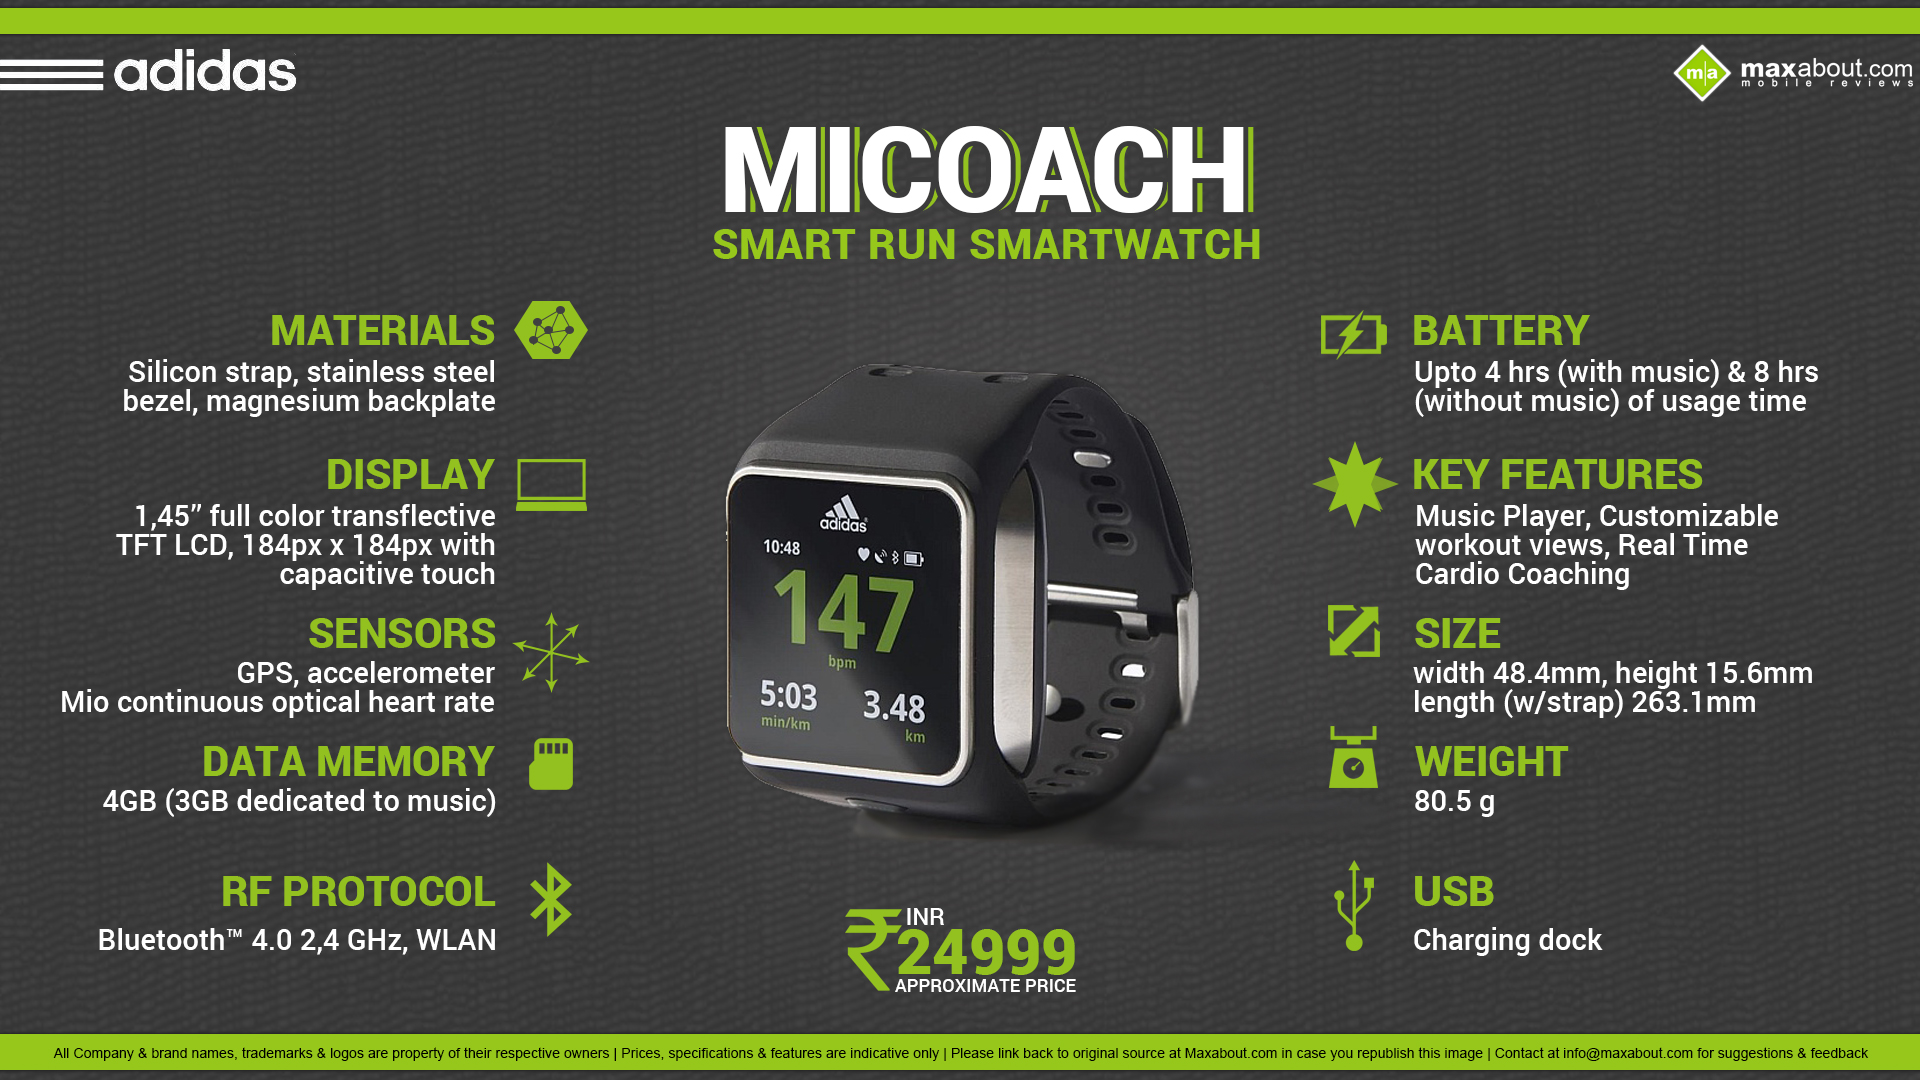 Notable taller Extraordinario Quick Facts - Adidas miCoach Smart Run Smartwatch